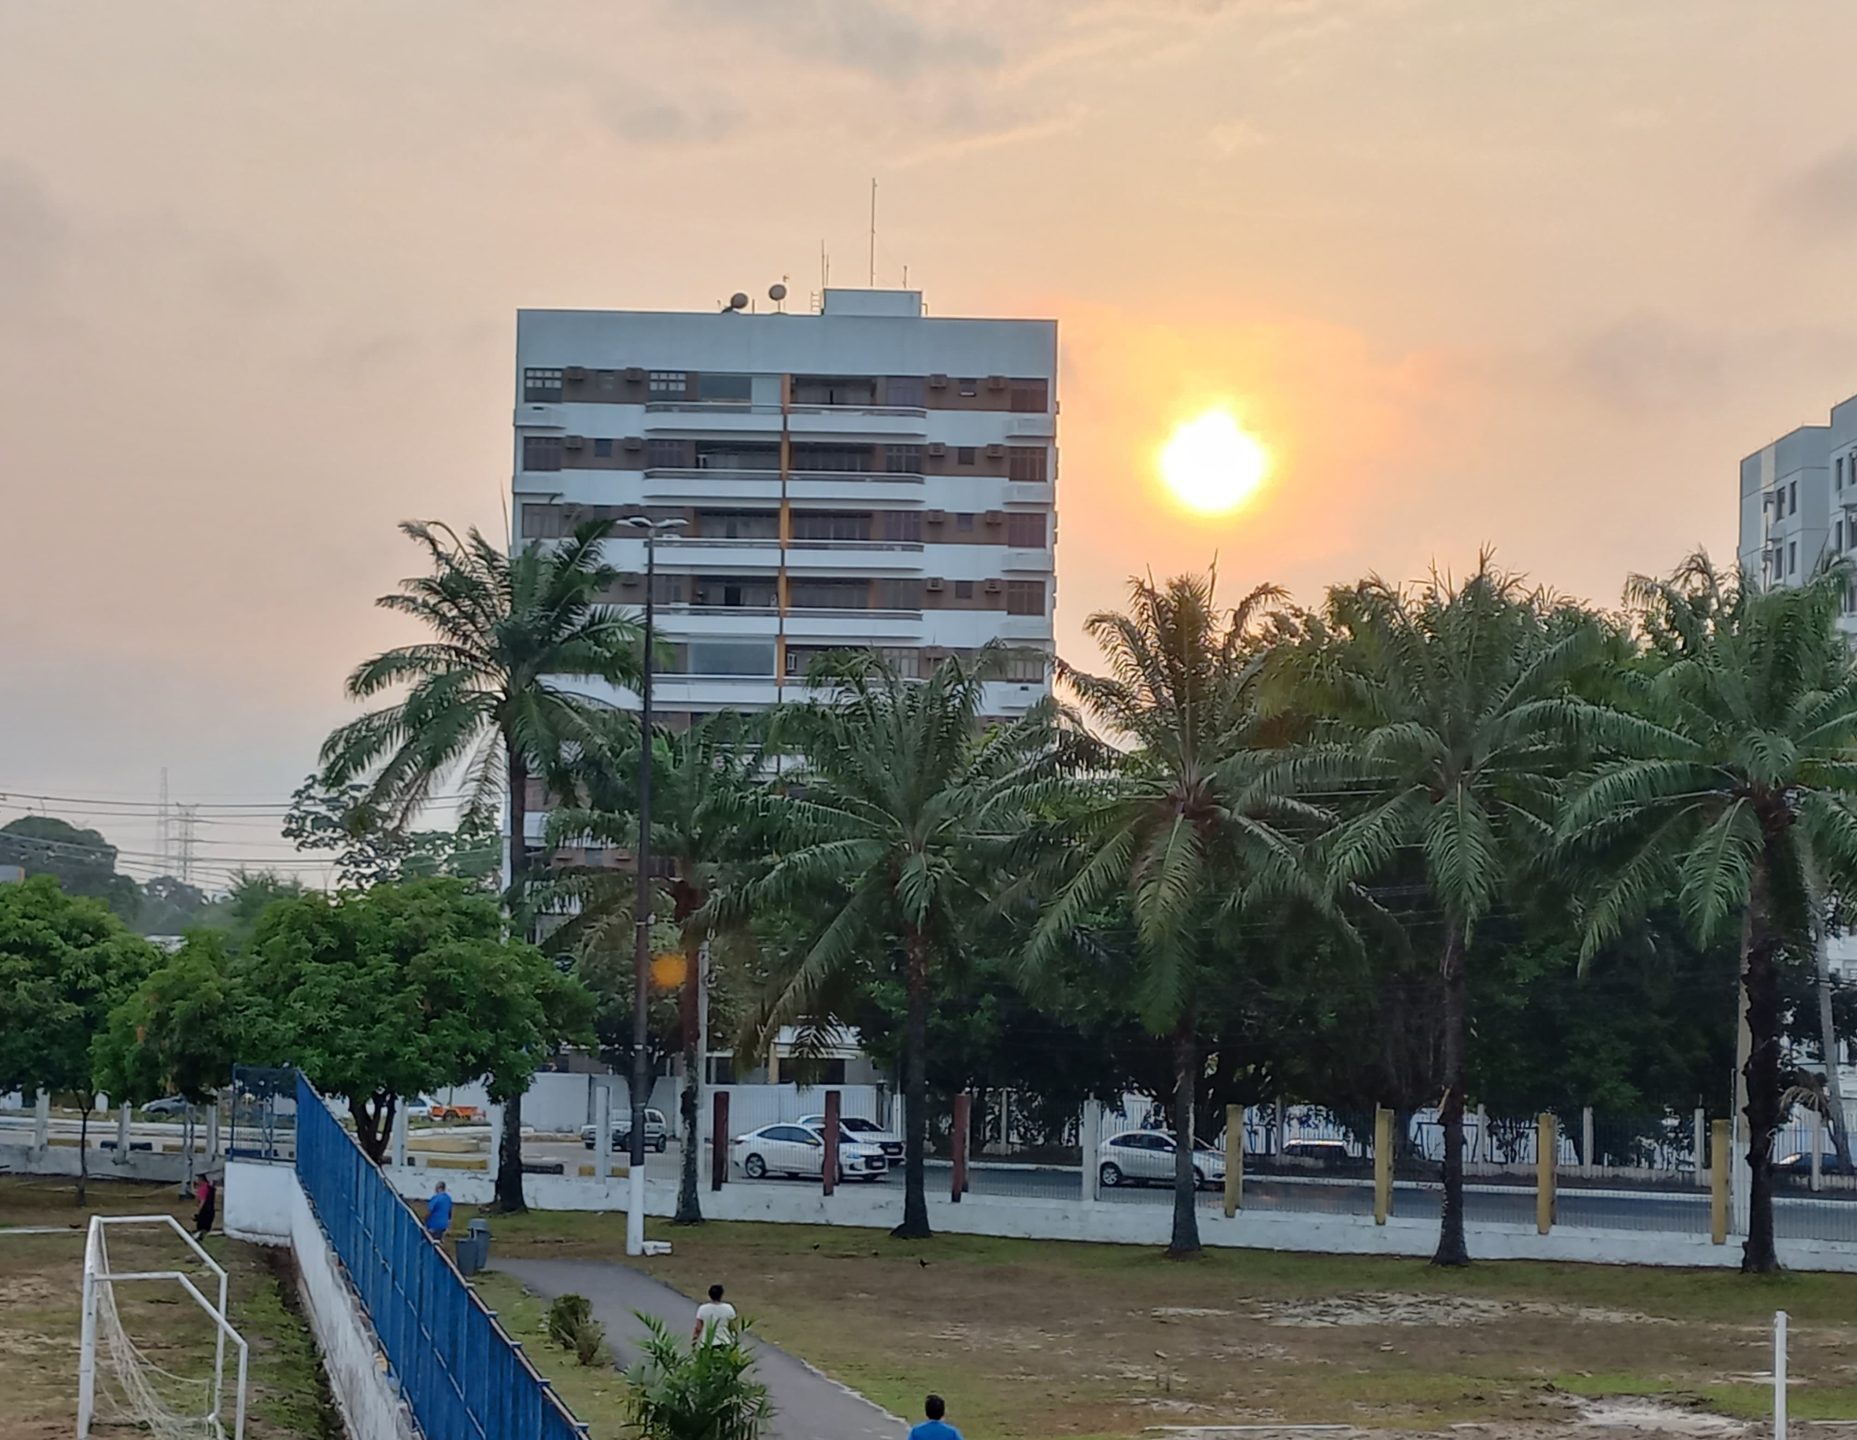 Previsão do tempo Depois de alguns dias sem aparecer devido à fumaça, o sol já aparece no céu de Manaus - Foto: Celso Maia